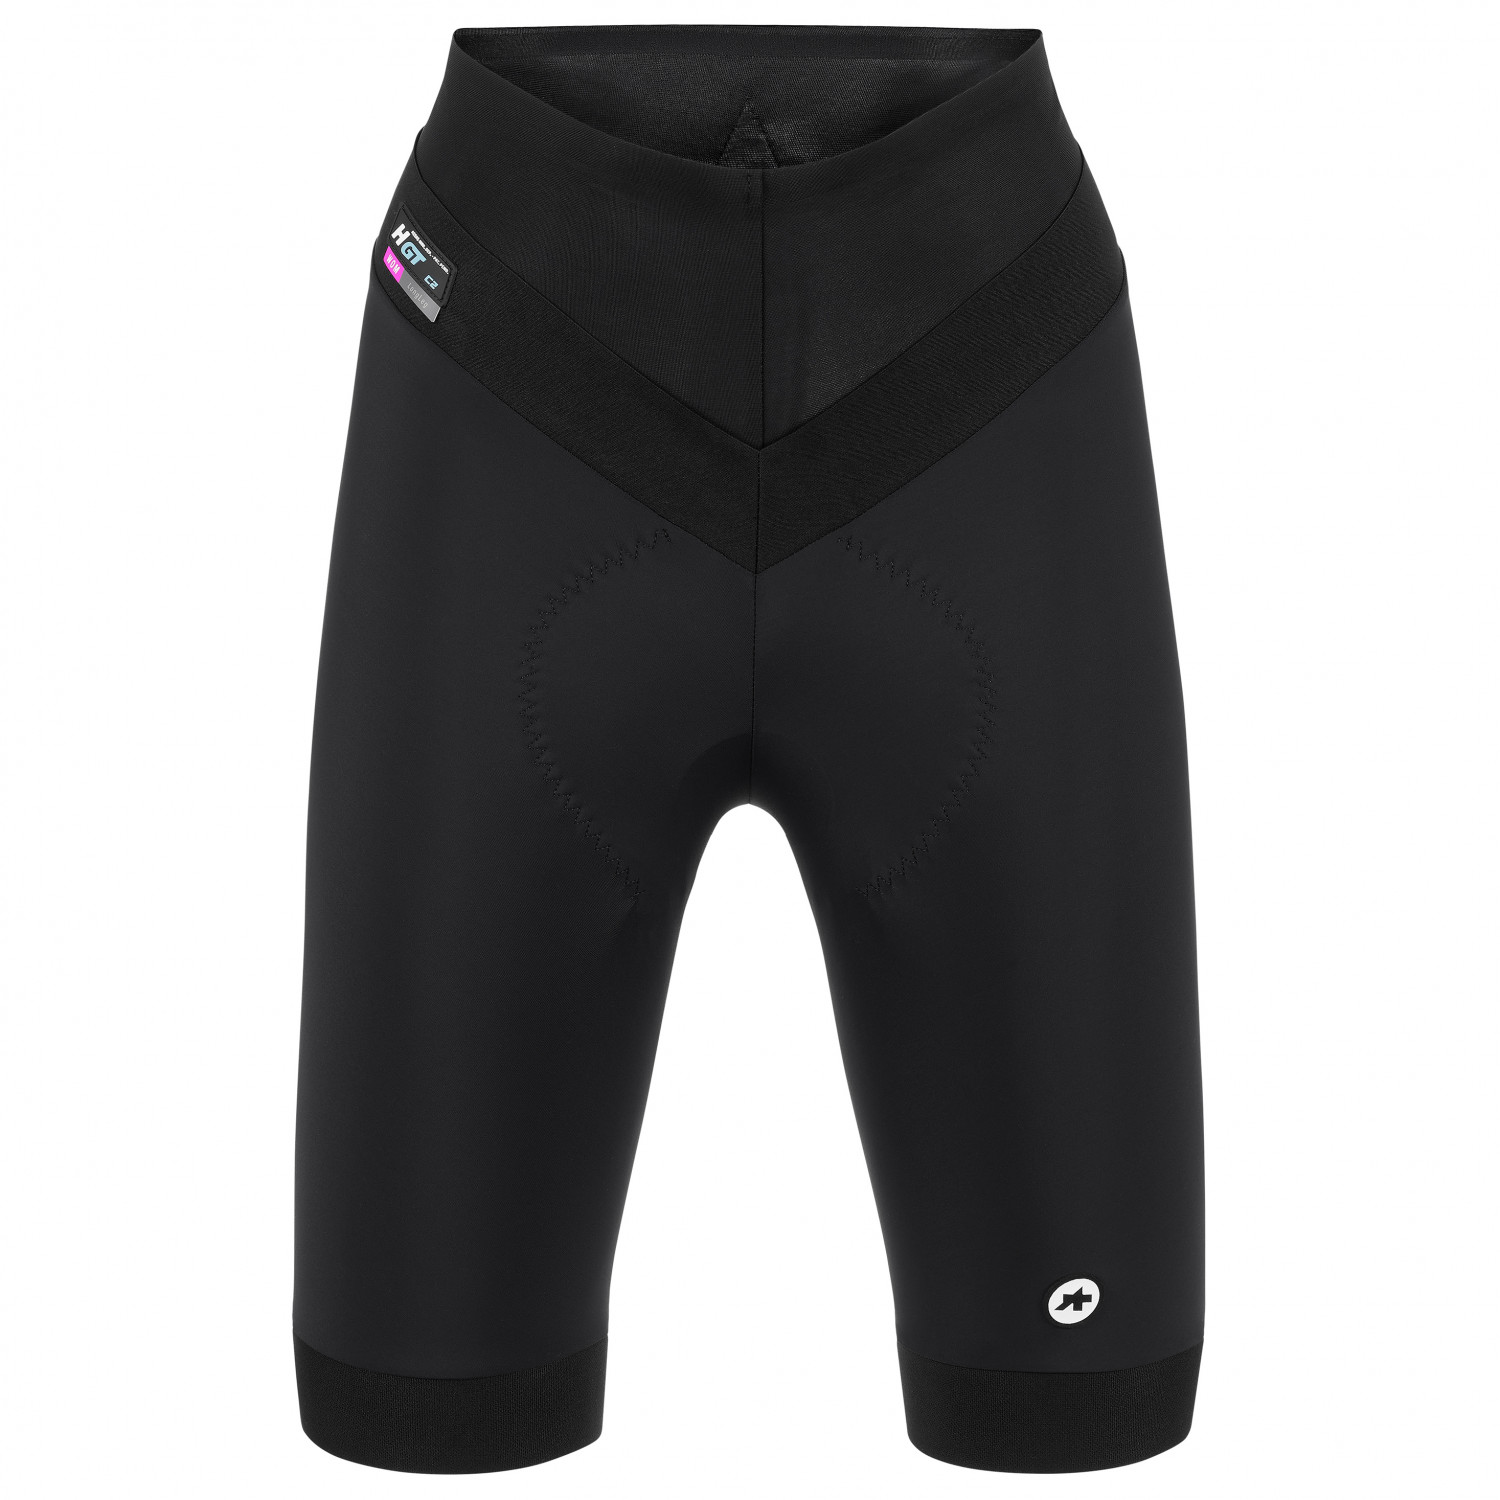 Велосипедные шорты Assos Women's Uma GT Half Shorts C2 Long, цвет Black Series